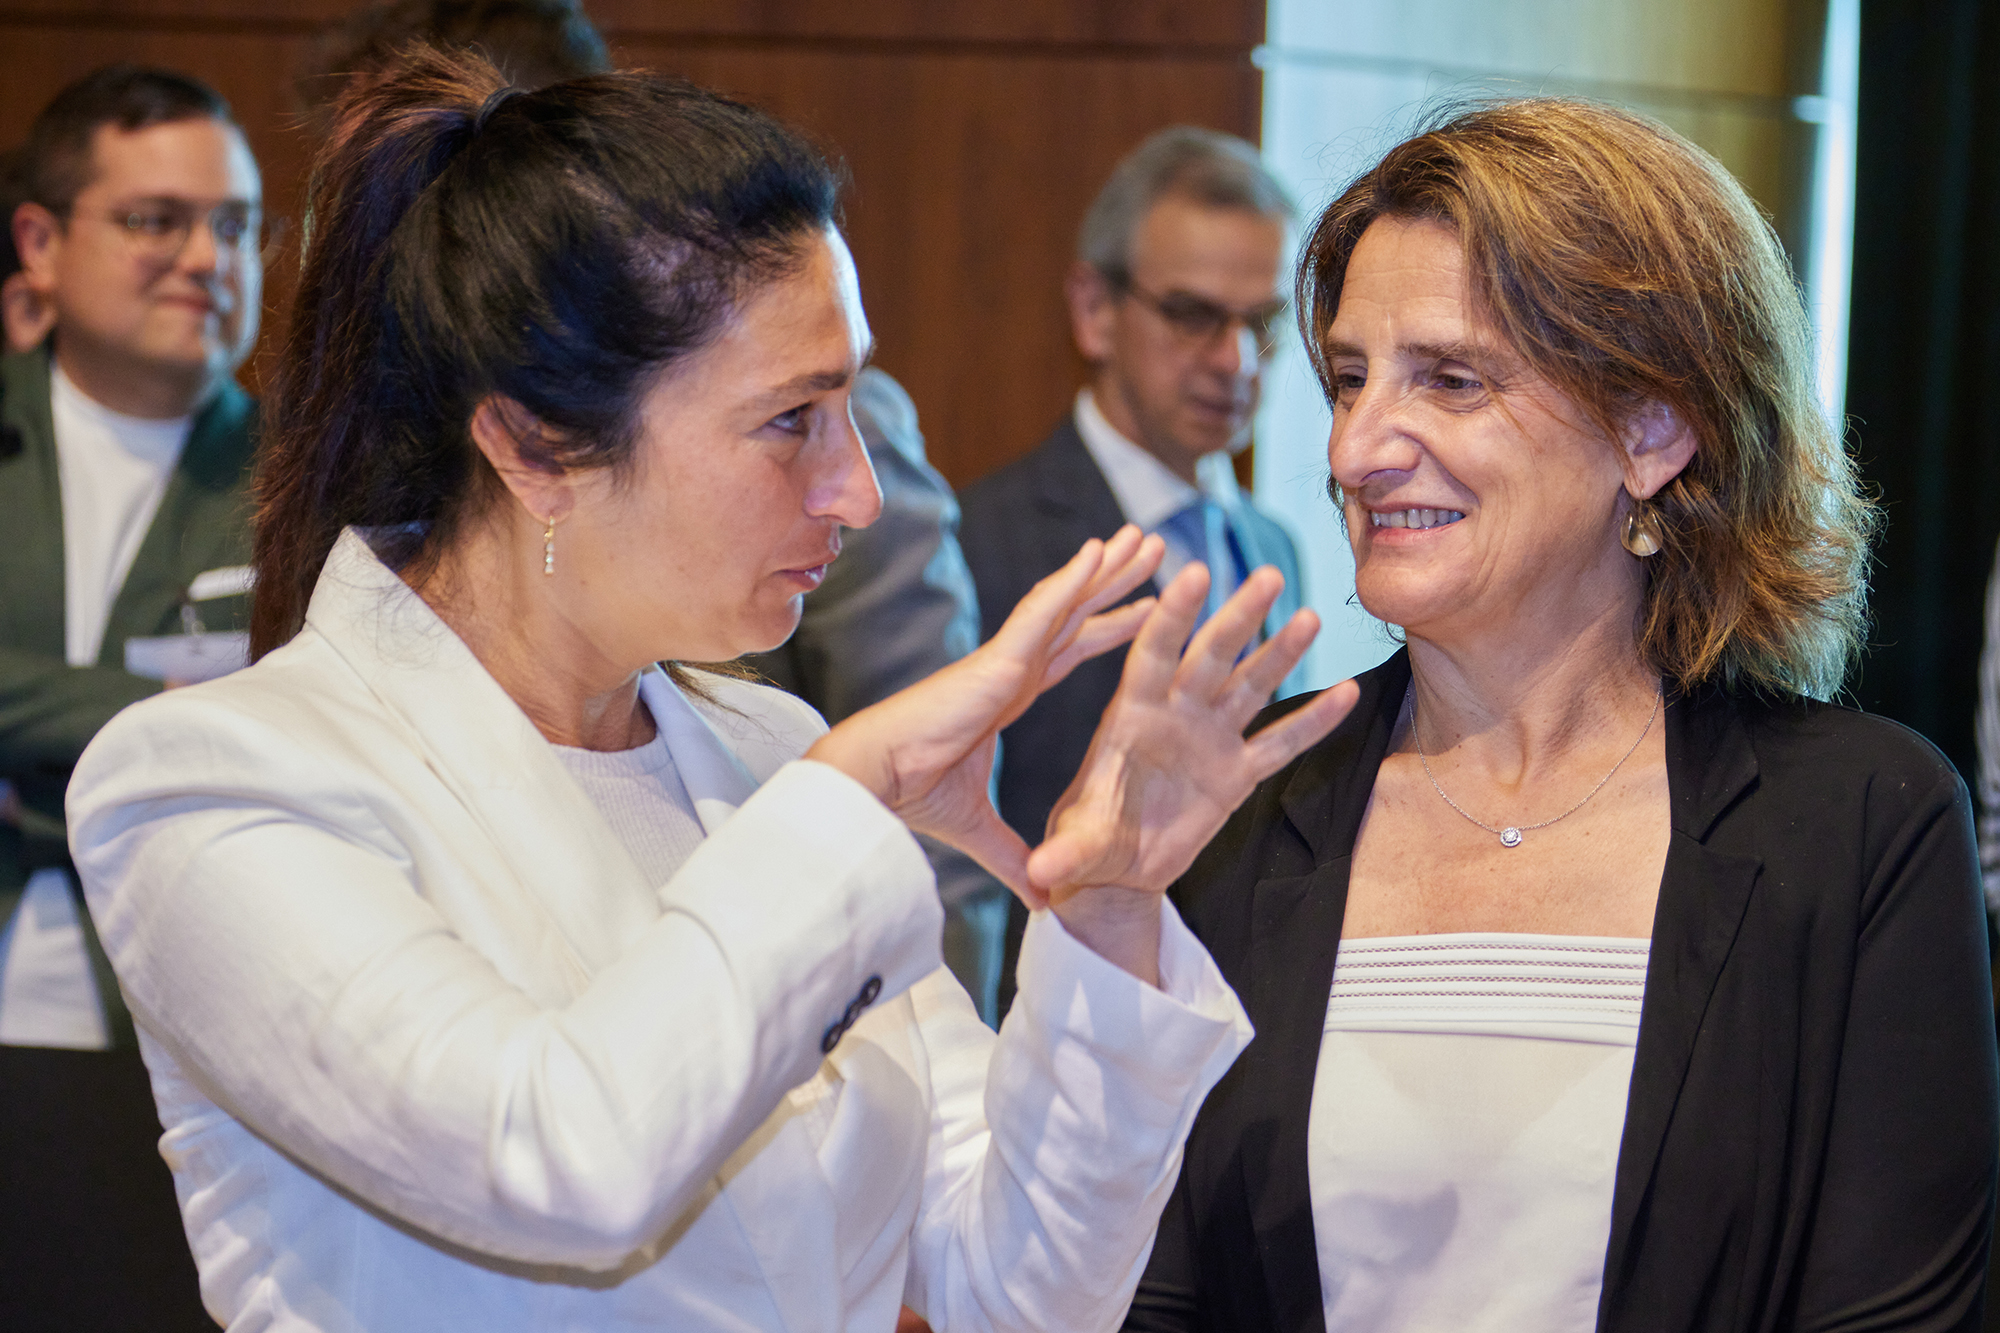 Flanderns Umweltministerin Zuhal Demir und ihre spanische Amtskollegin Teresa Ribera Rodríguez in Luxemburg (Bild: Claude Ernst/Belga)